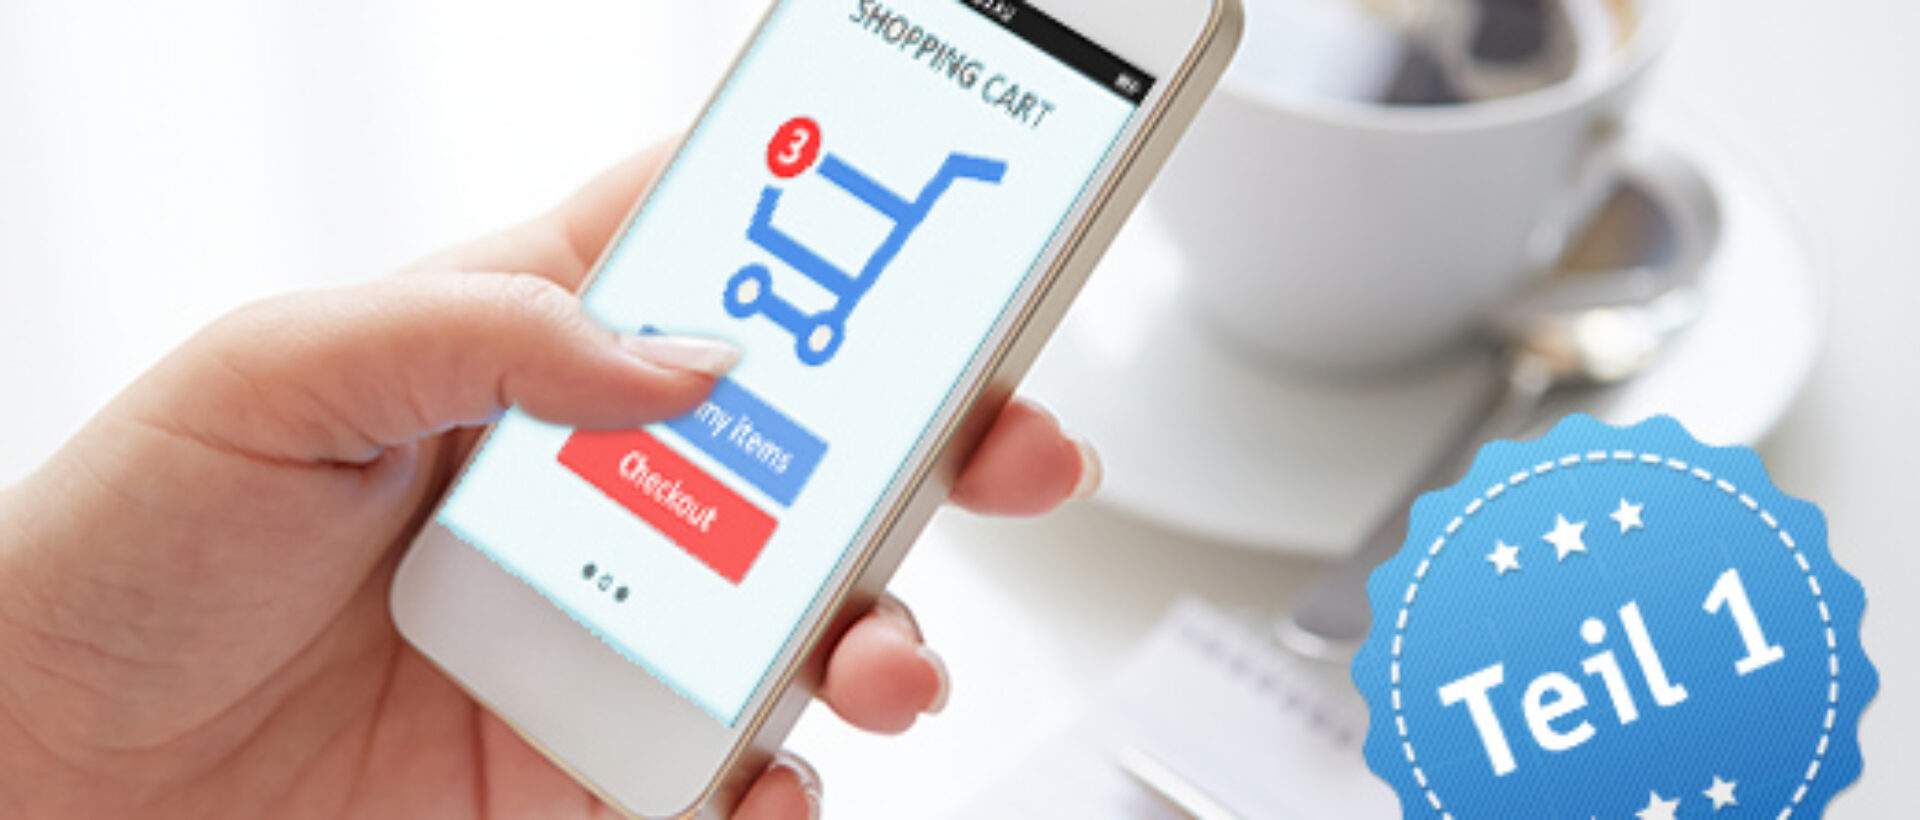 Online-Shopping per Smartphone oder Tablet